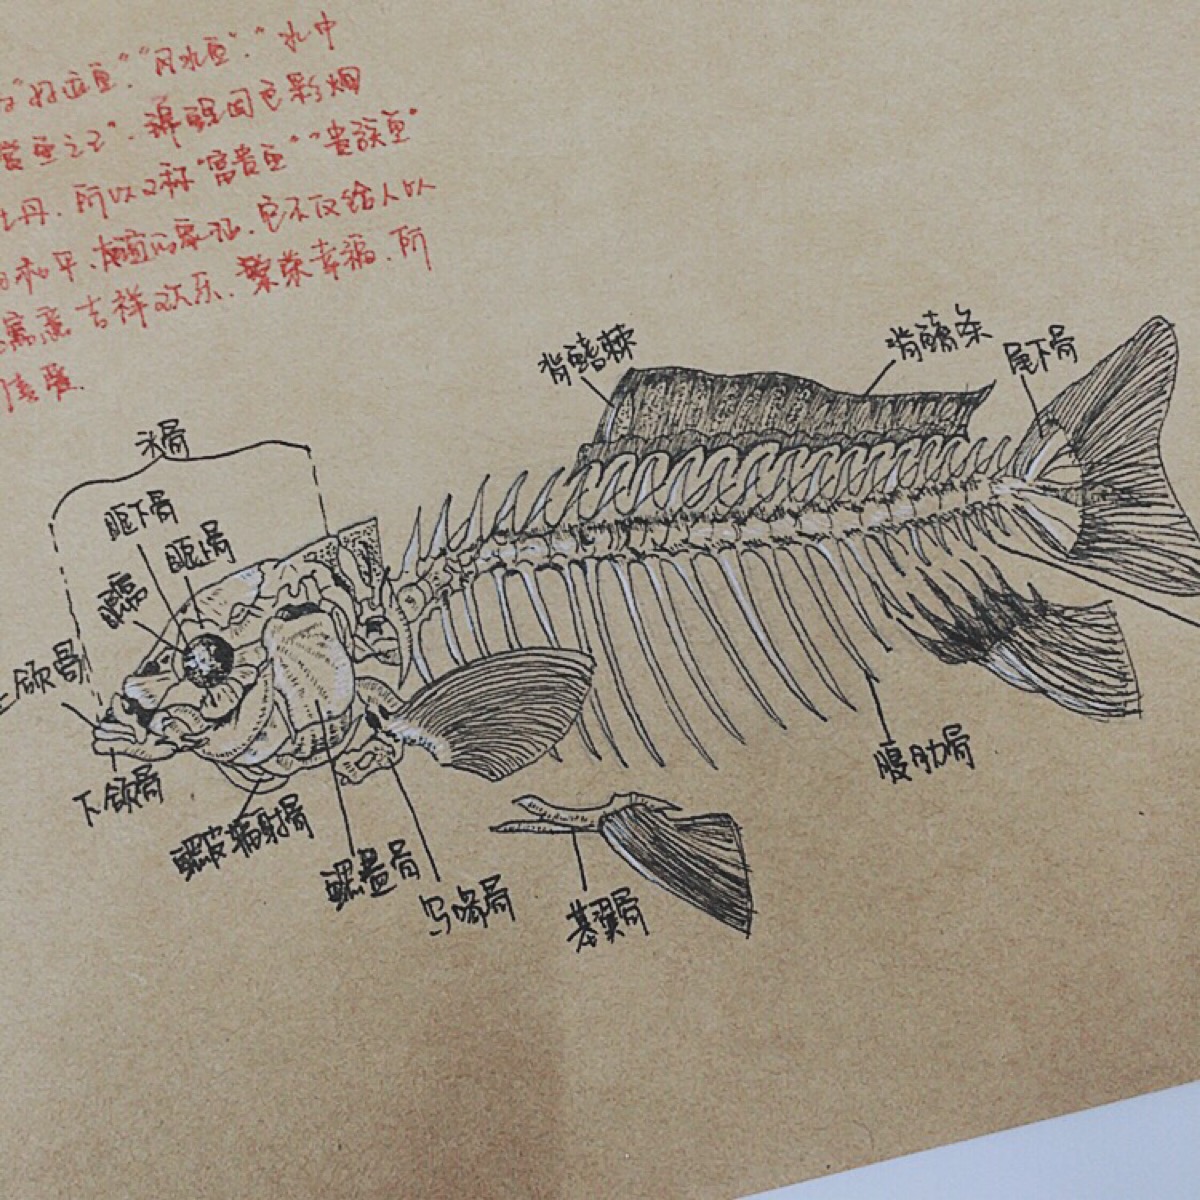 鱼骨素描画法图片